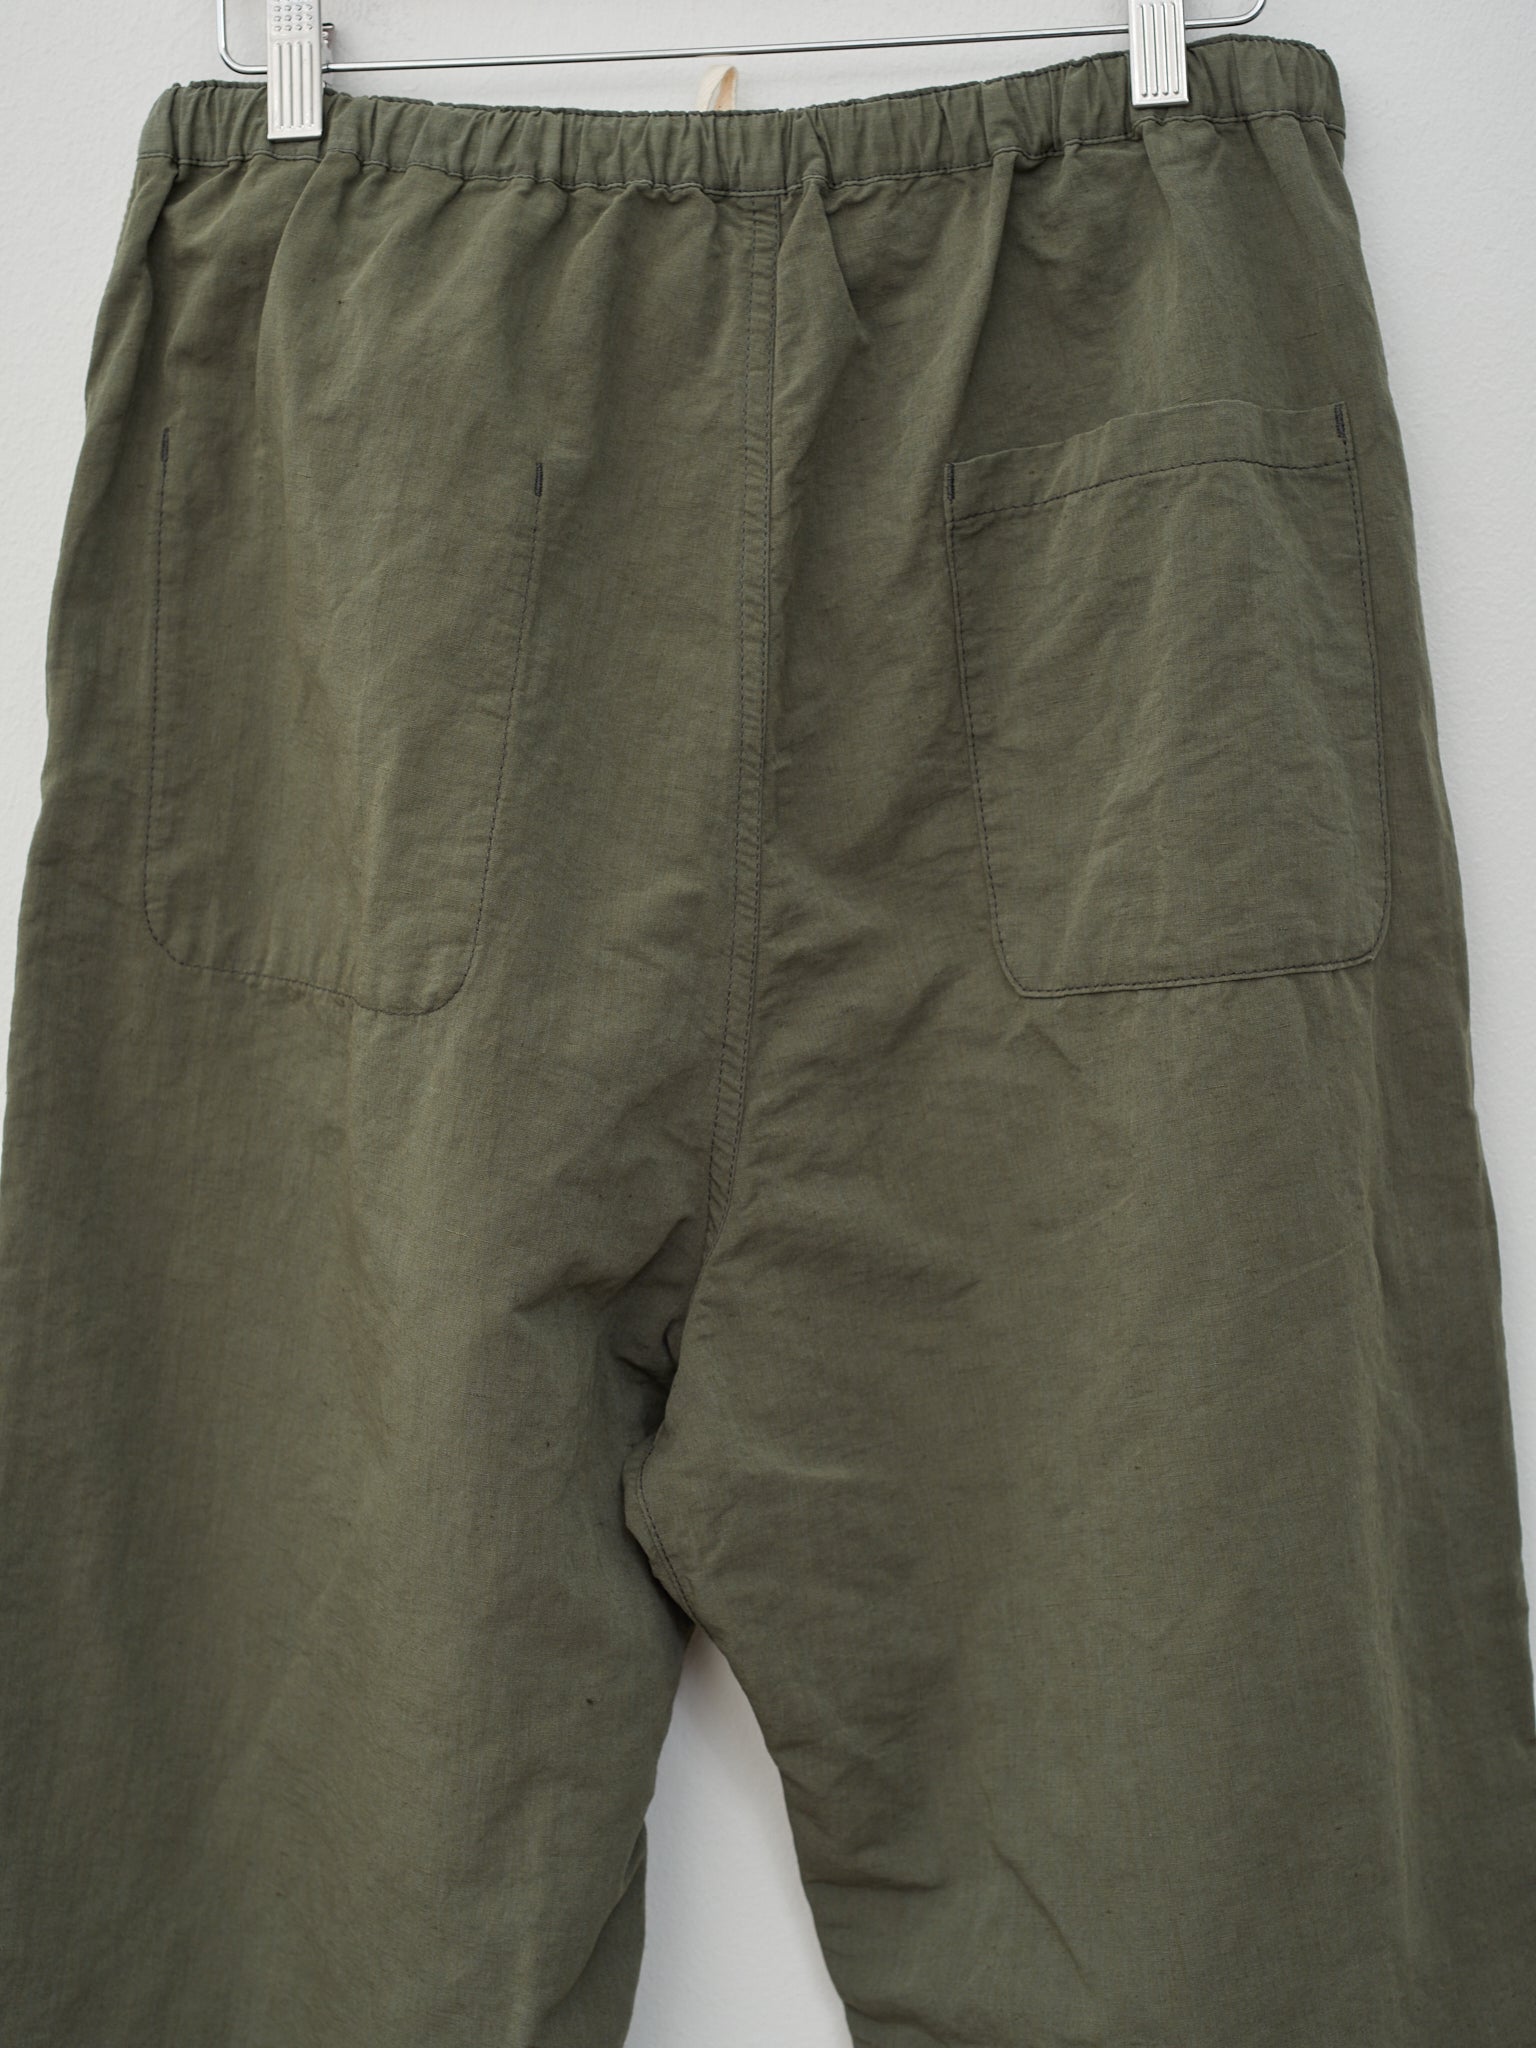 Namu Shop - Fujito Pajama Pants - Olive Green